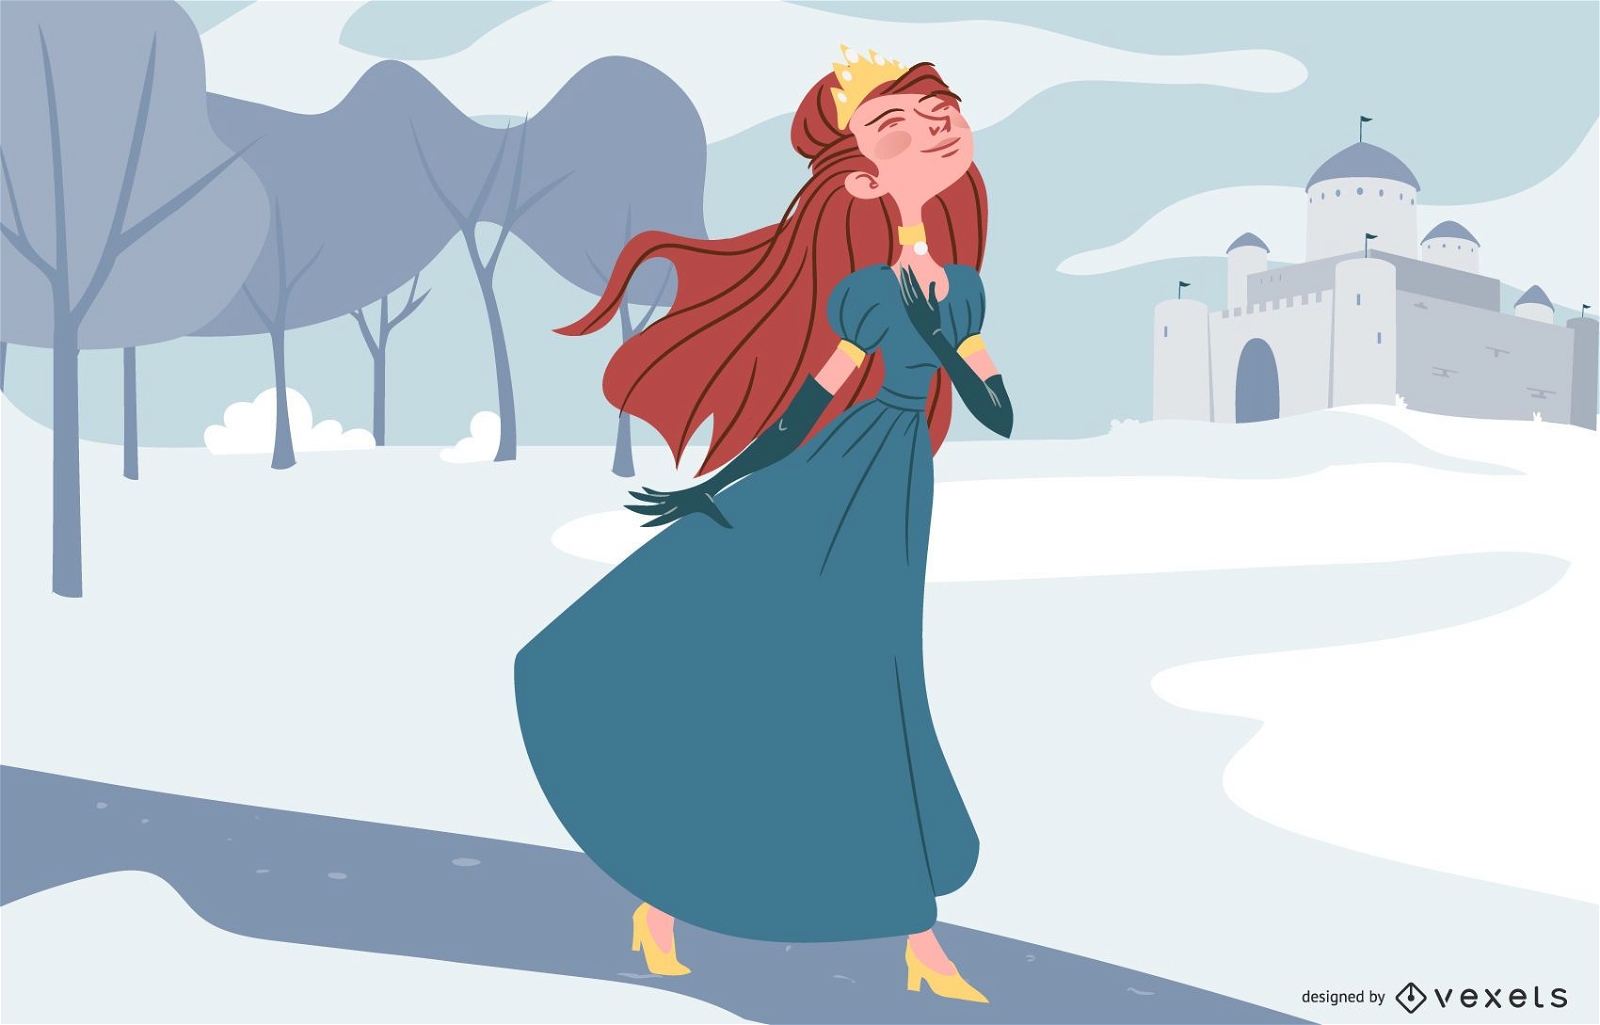 Princesa en ilustraci?n de personaje de invierno